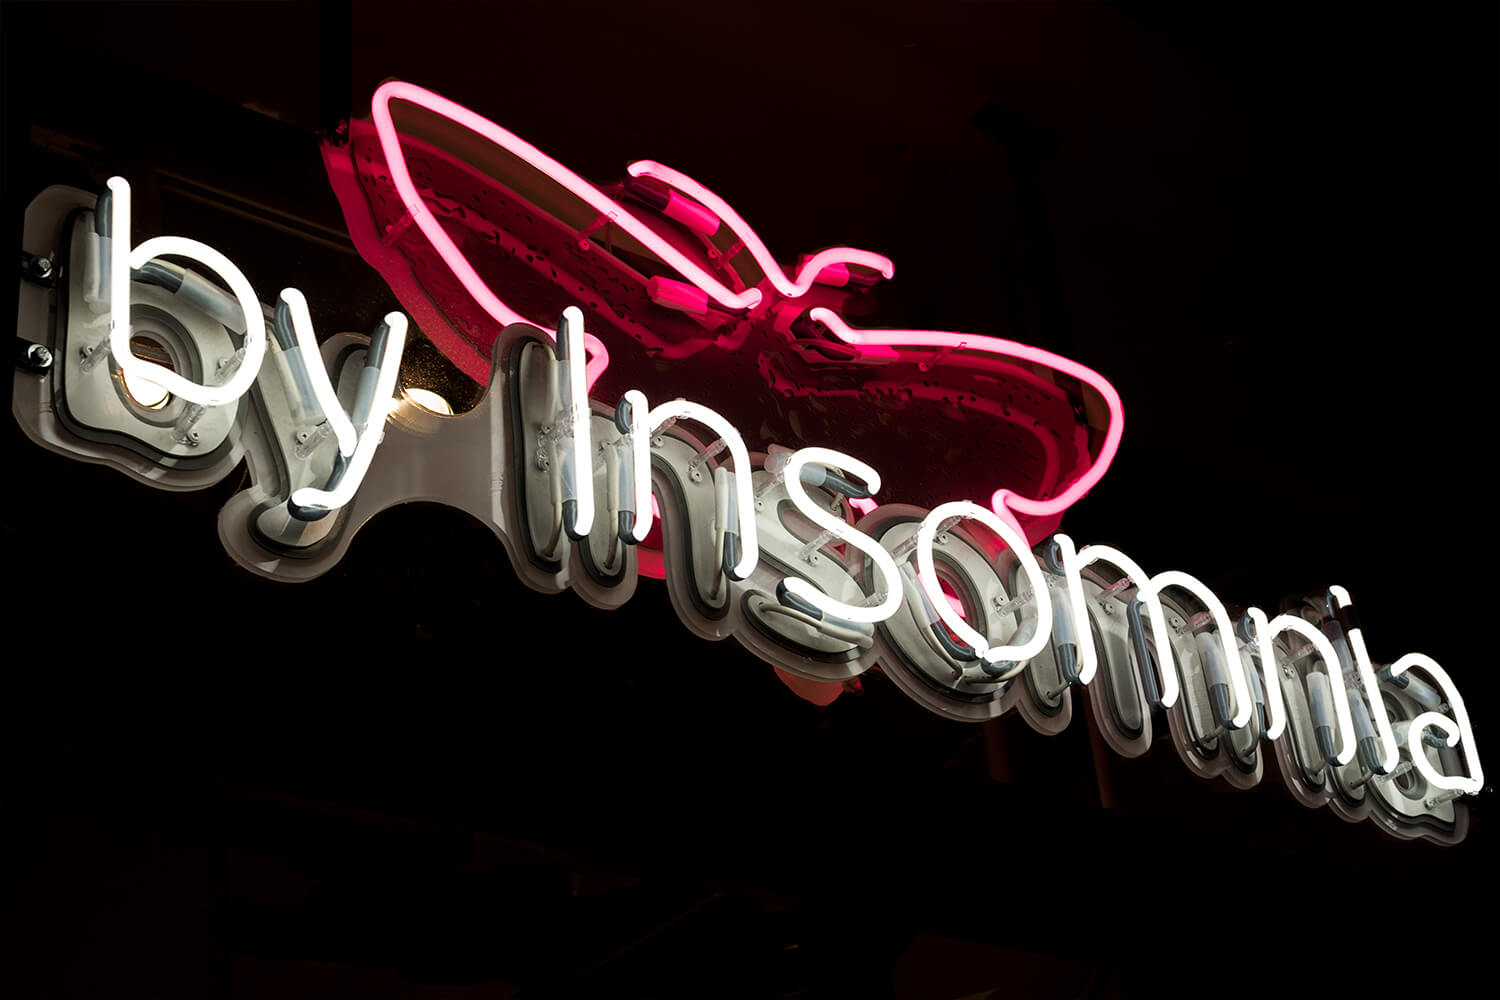 Insonnia - By Insomnia - insegna al neon con il nome della società, montata su plexiglass, posta dietro il vetro